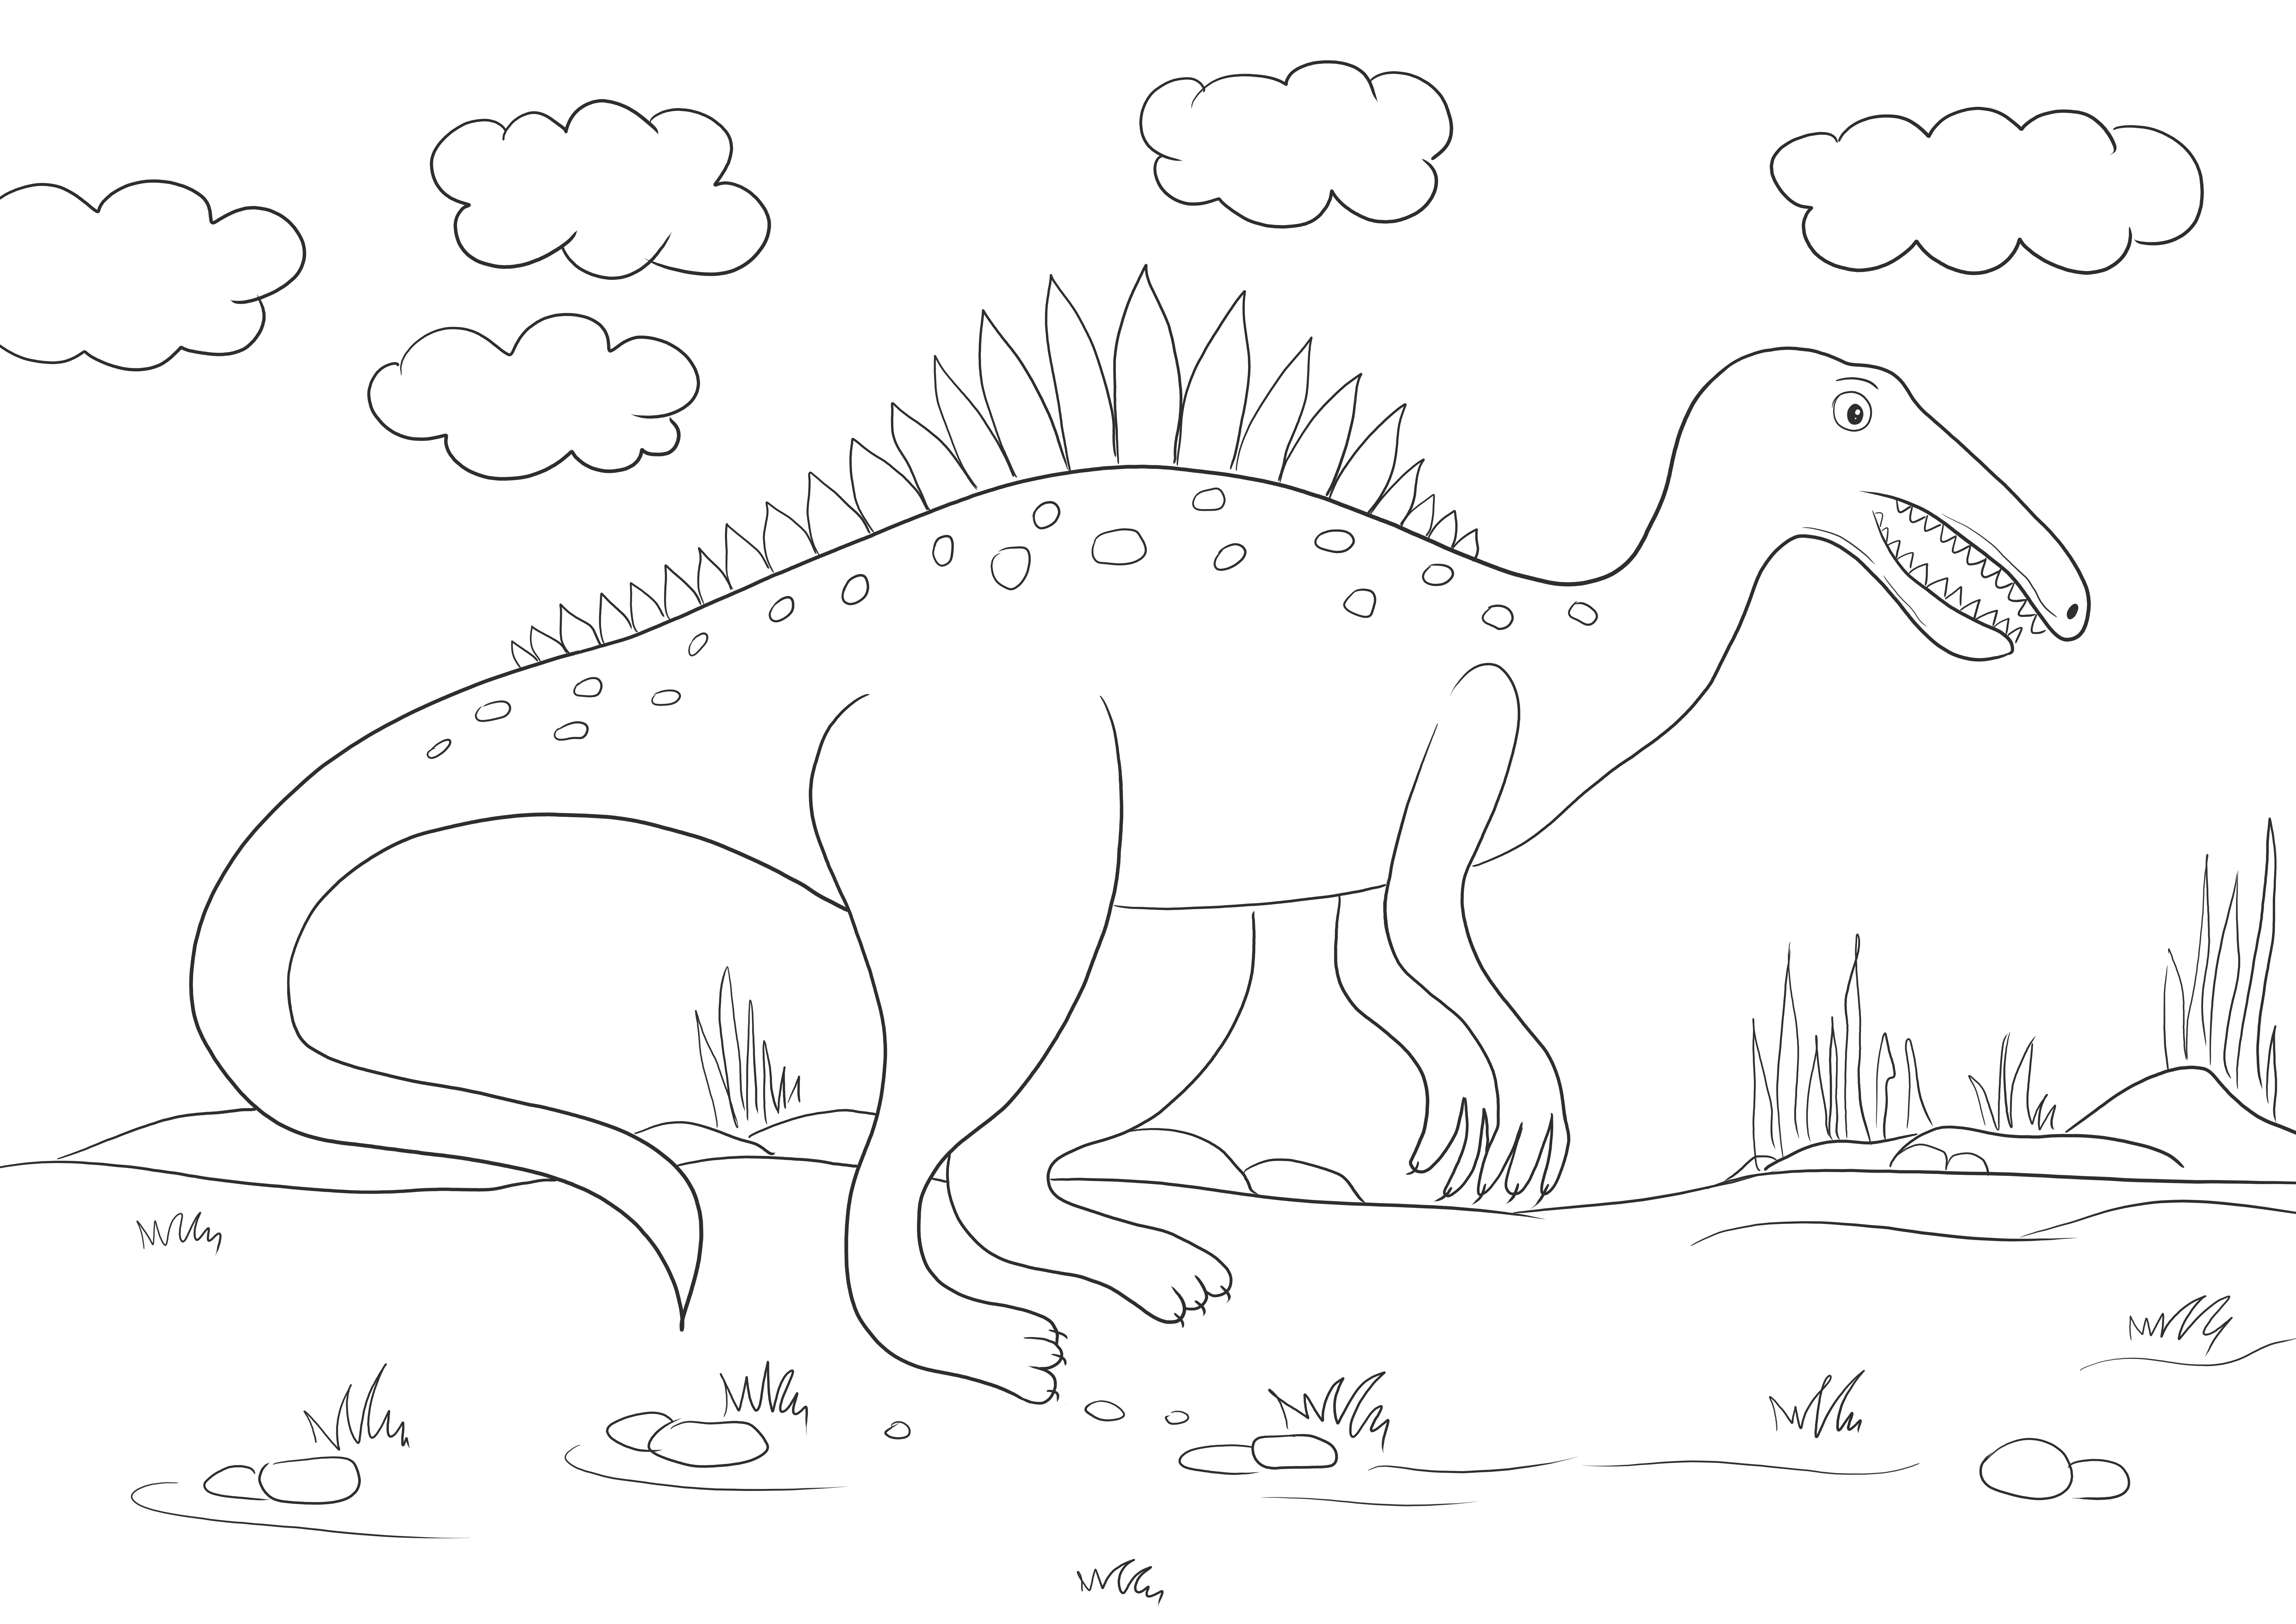 Spinosaurus Dinosaur semplice immagine da colorare per tutti gli amanti dei dinosauri